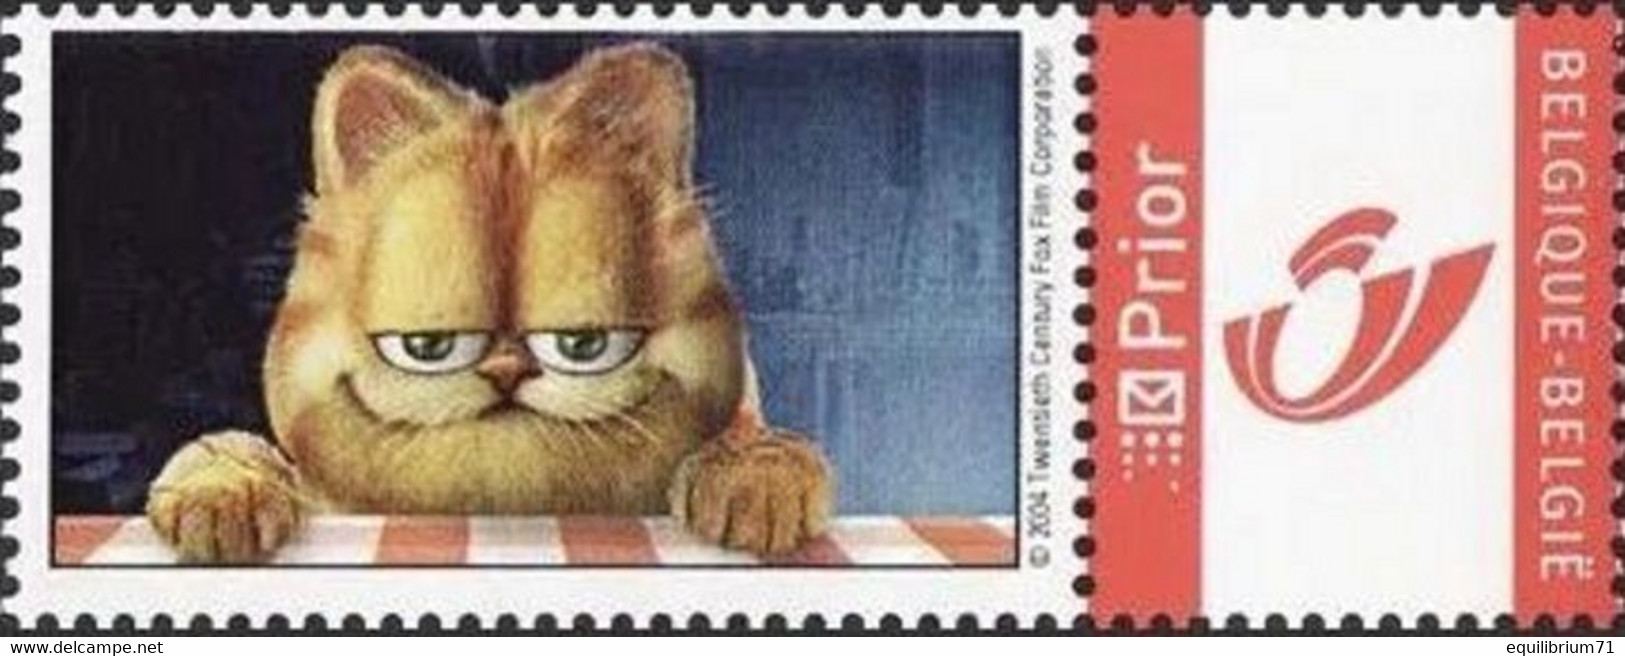 DUOSTAMP** / MY STAMP** - Garfield - Garfield The Movie - Chat / Kat / Katze / Cat - Ungebraucht